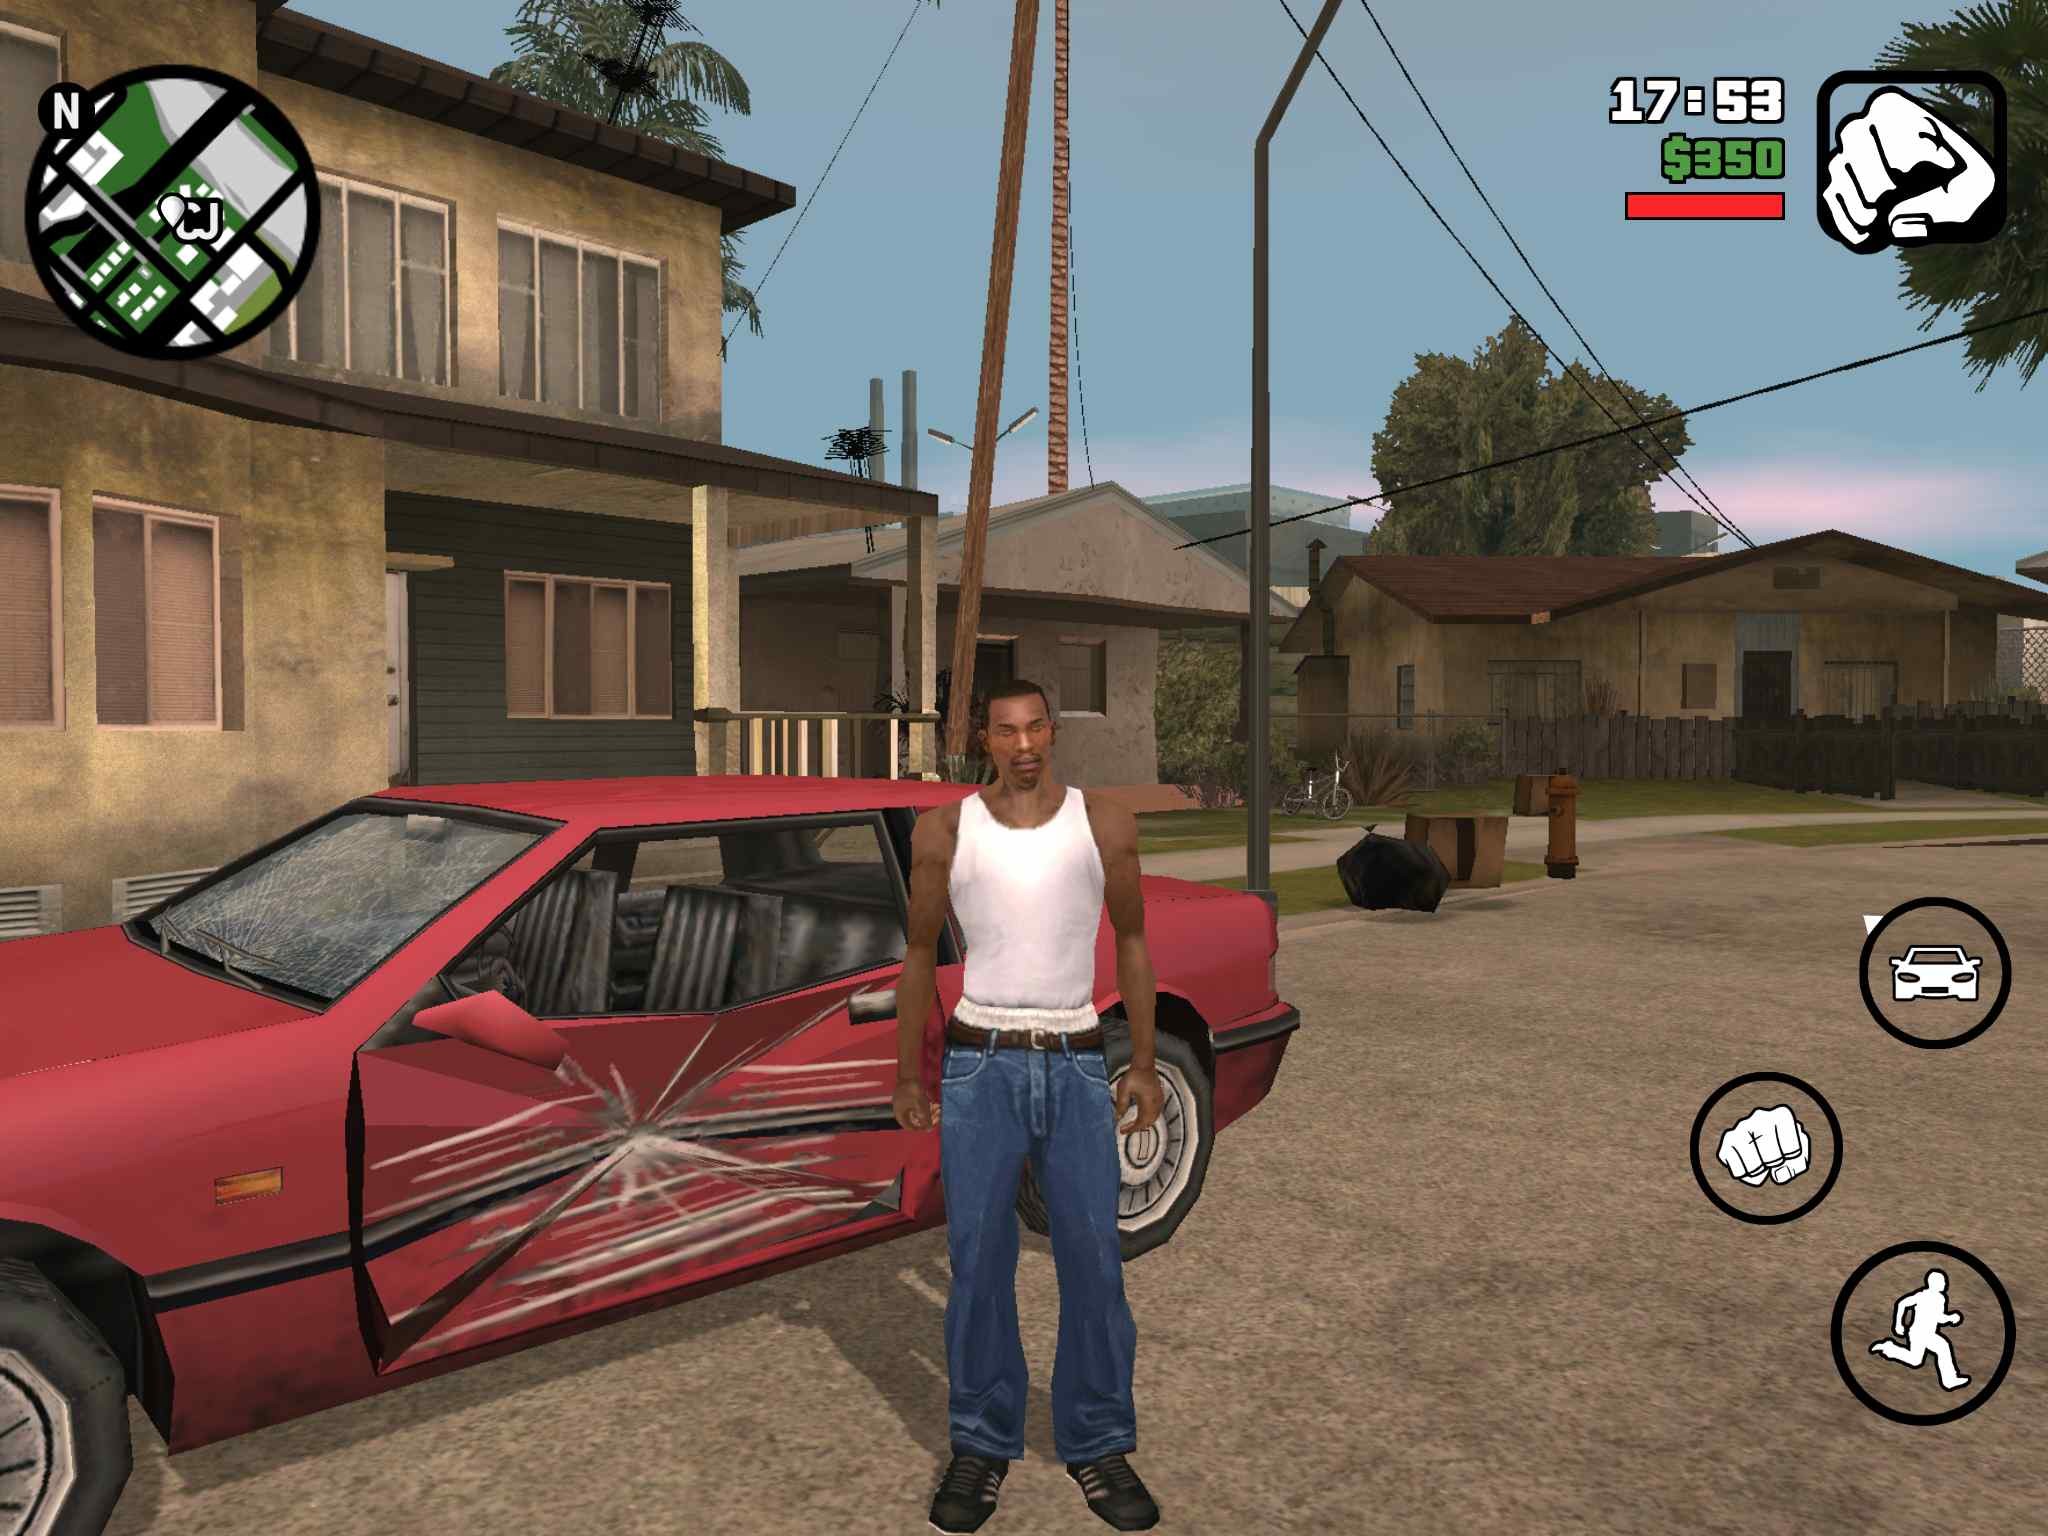 Grand Theft Auto San Andreas Gta - HD Wallpaper 